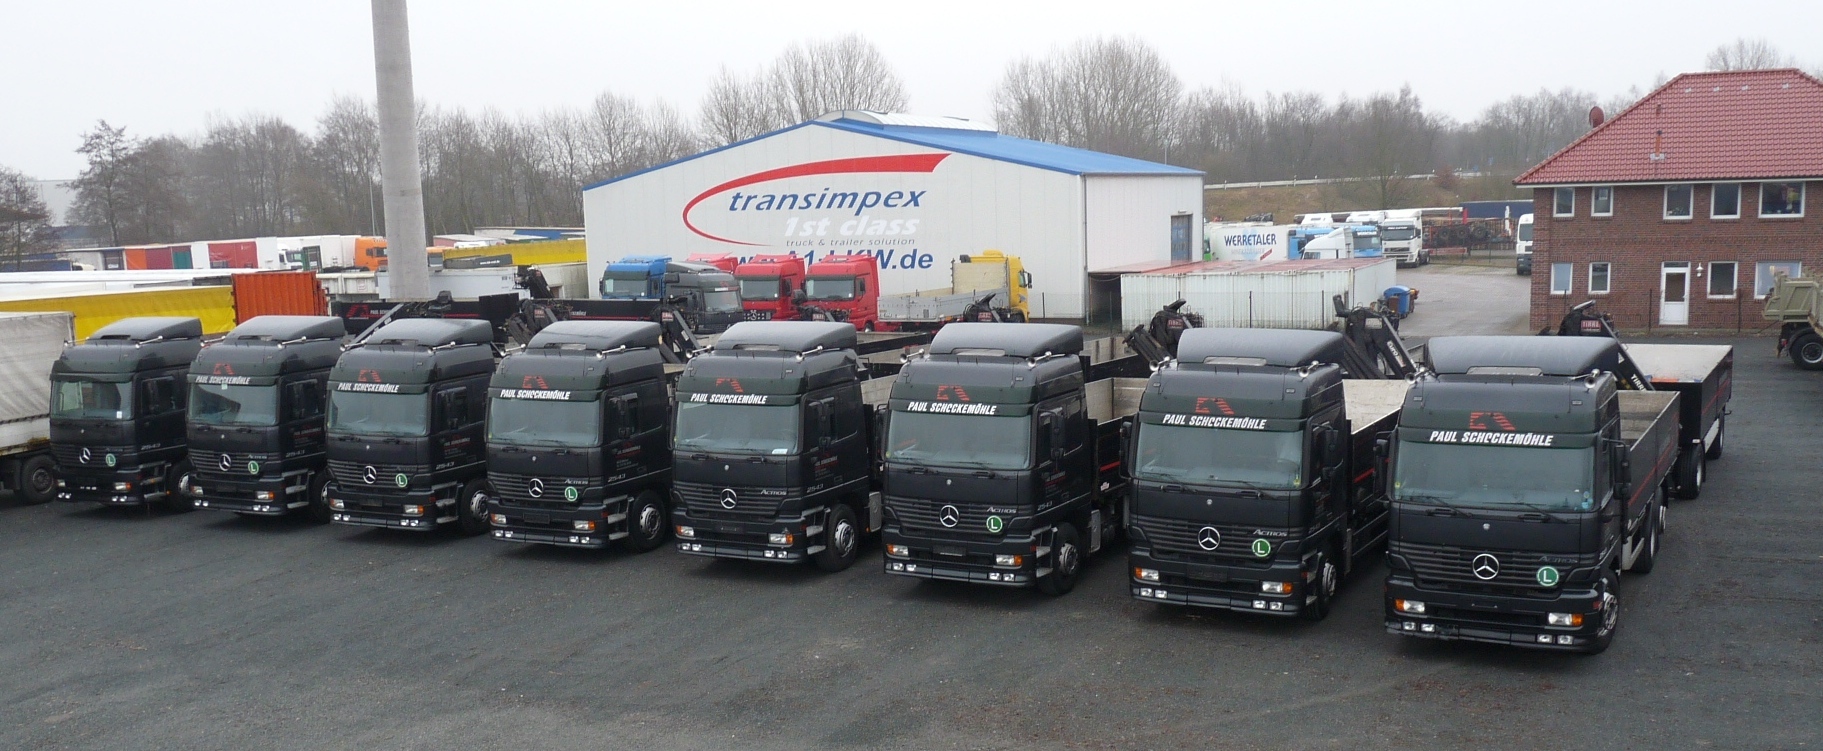 A1-Truck GmbH - объявления о продаже undefined: фото 2